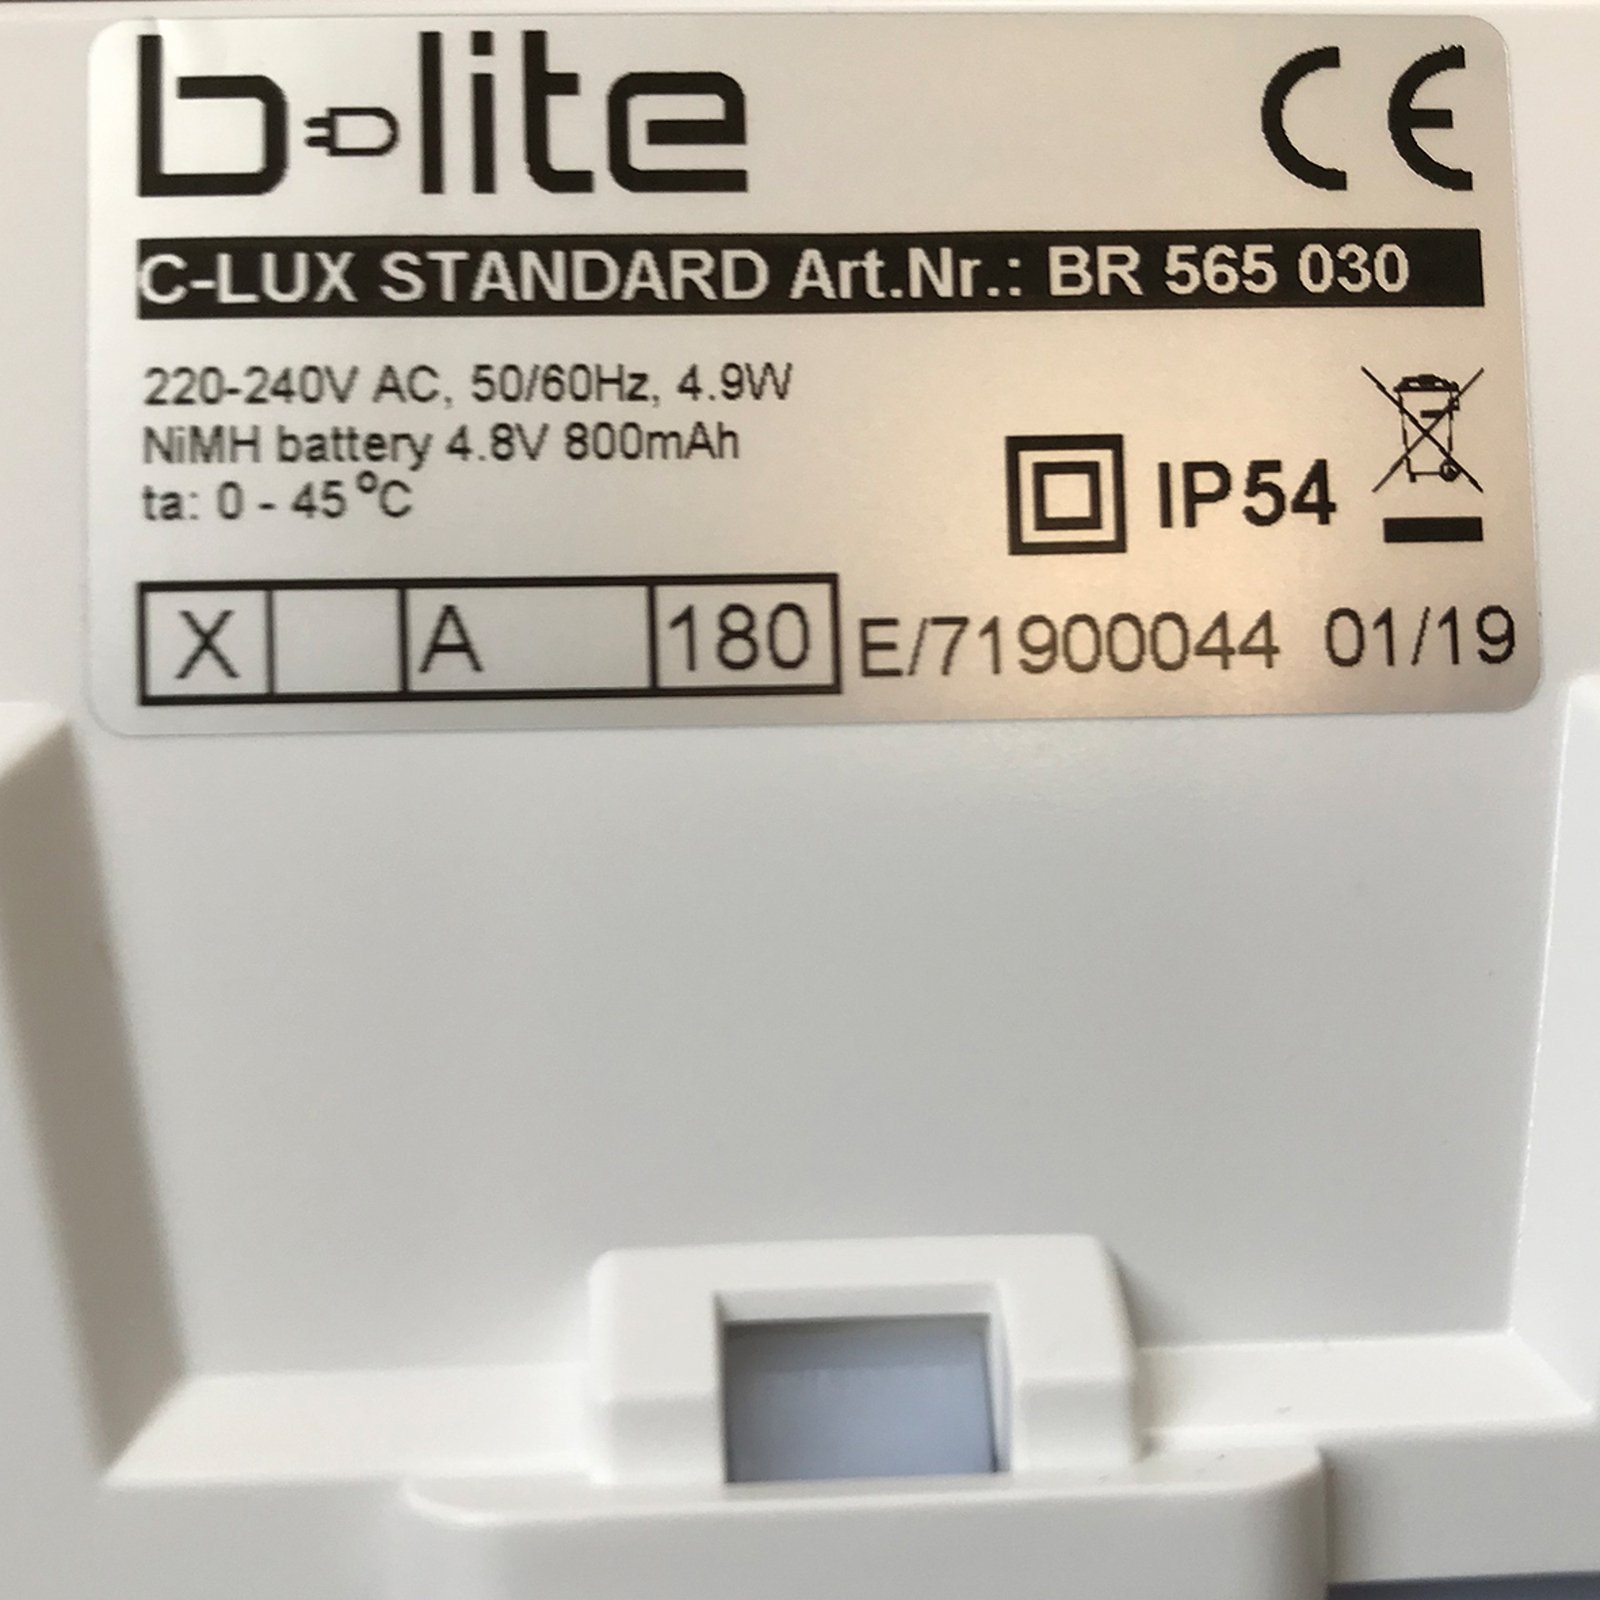 LED vészlámpa C-Lux Standard, központi ellátás